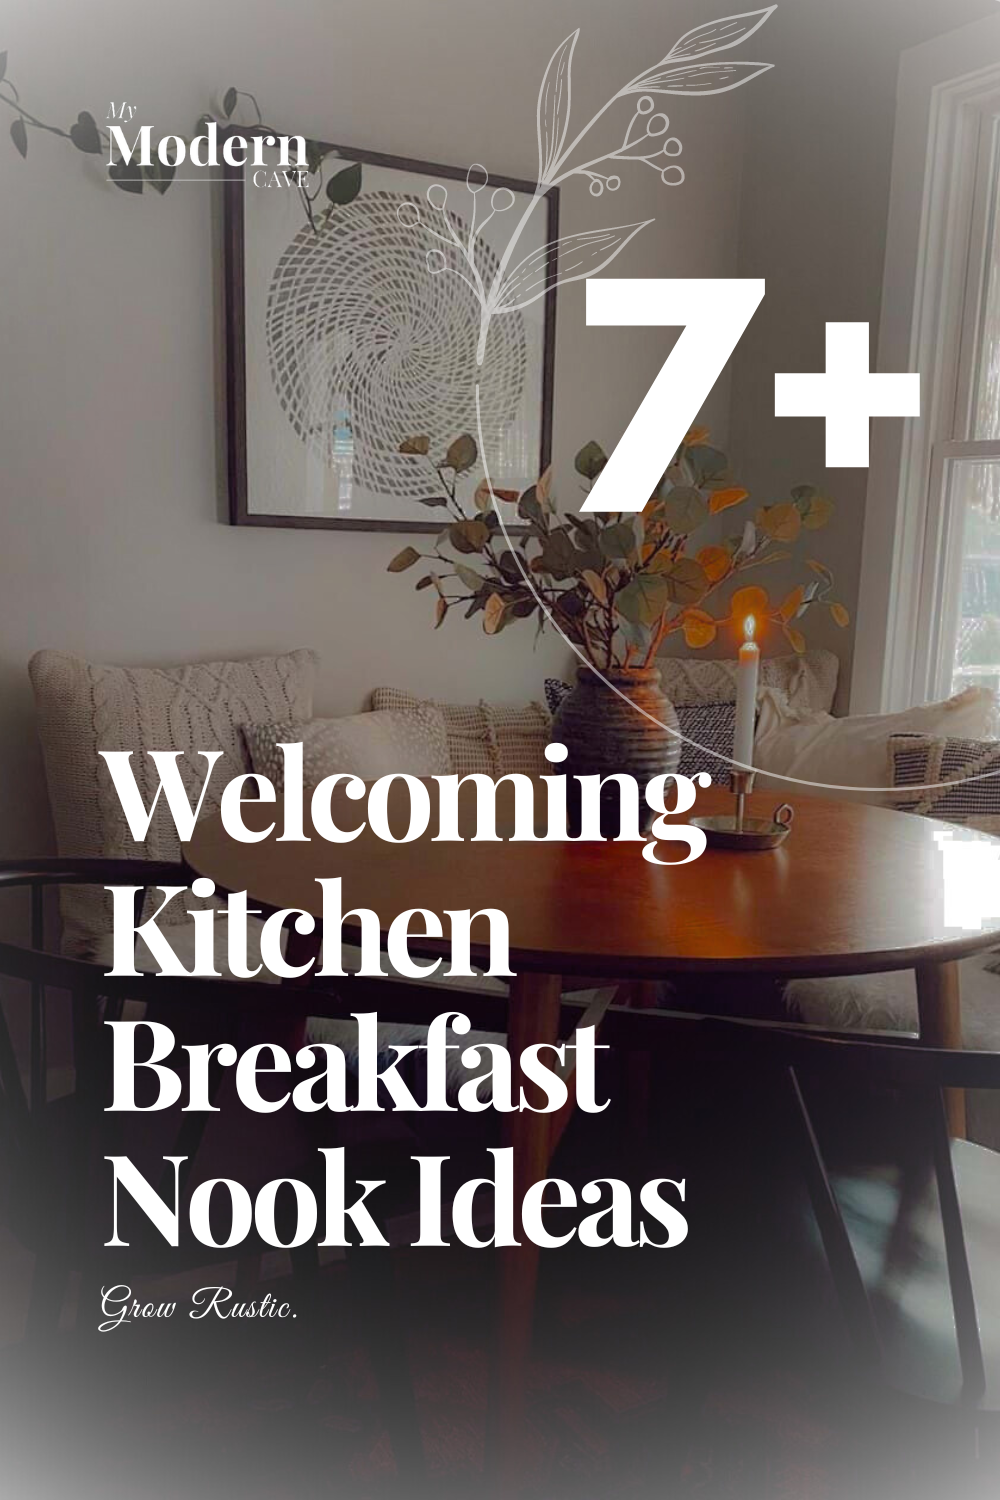 Kitchen Breakfast Nook Ideas Infographic